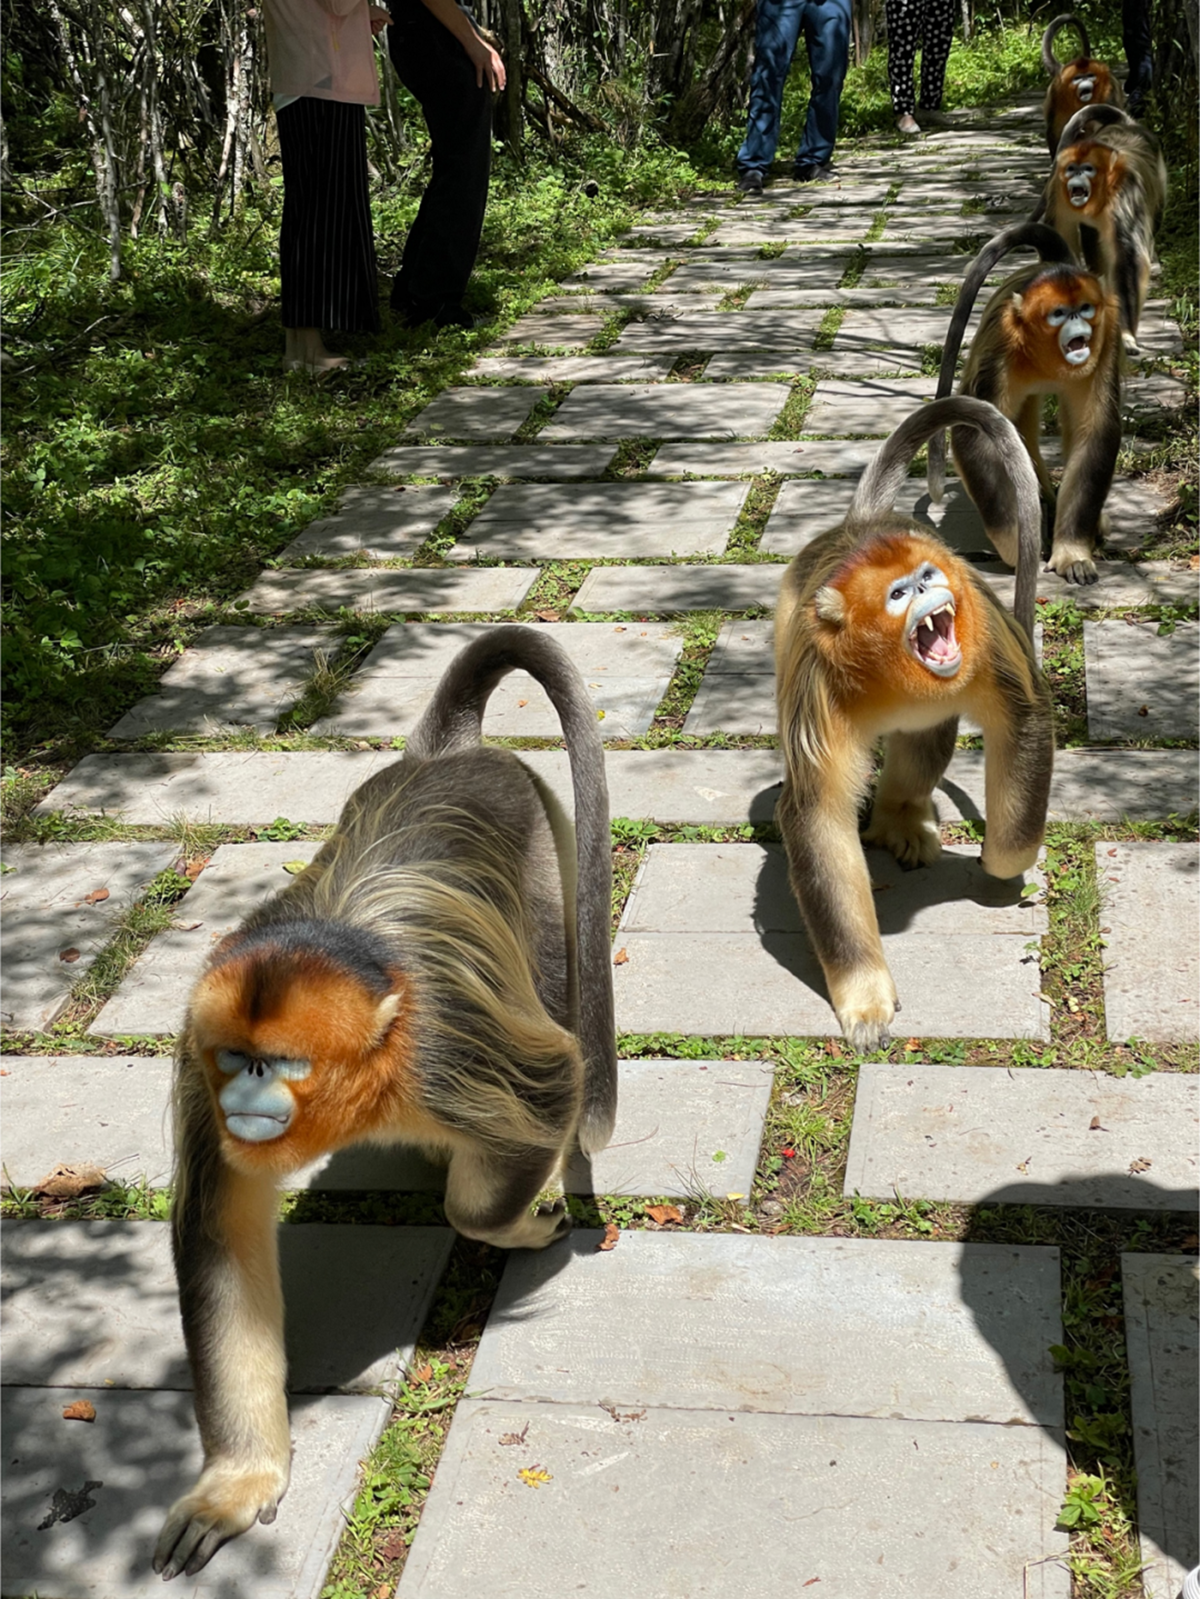 列队行进的川金丝猴与游客互动